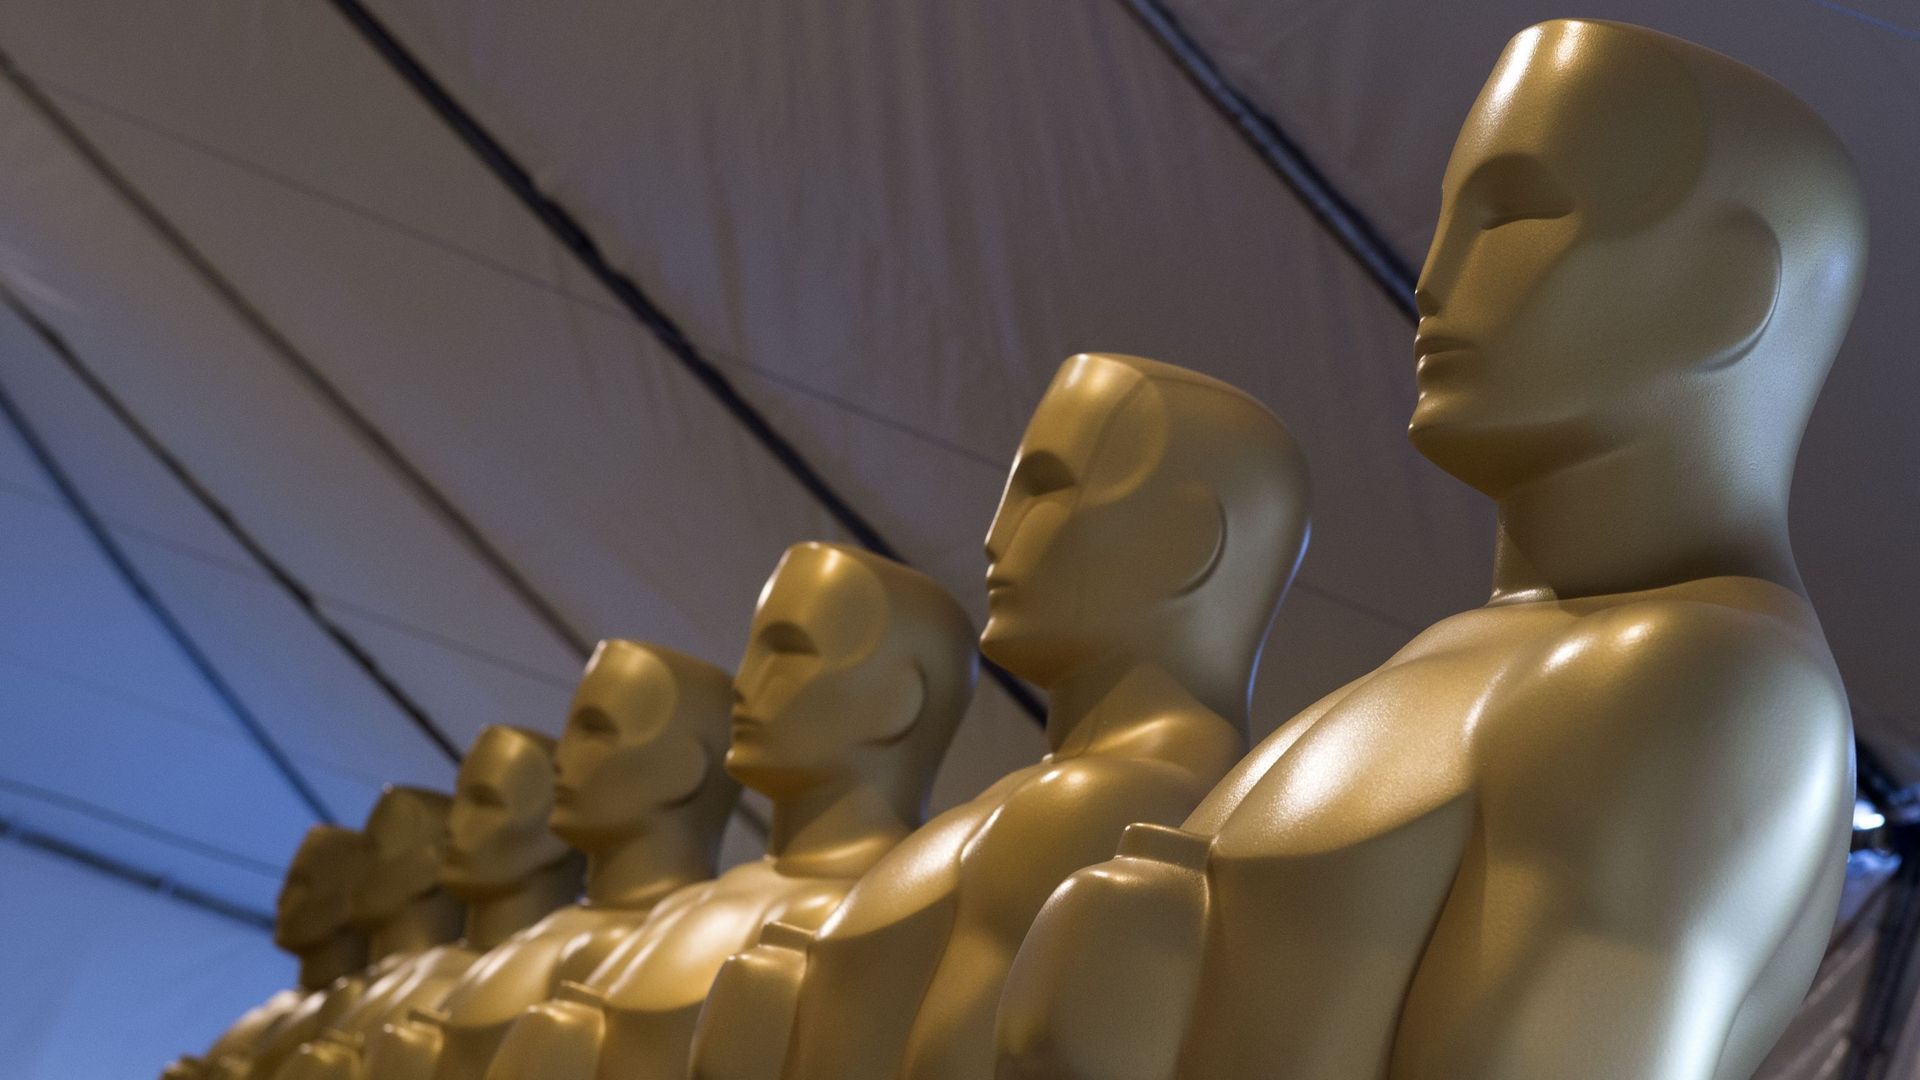 La cérémonie de remise des Oscars, soirée la plus suivie par Hollywood, se déroulera le 9 février sans animateur en titre comme pour l'édition précédente, ont indiqué mercredi les organisateurs.